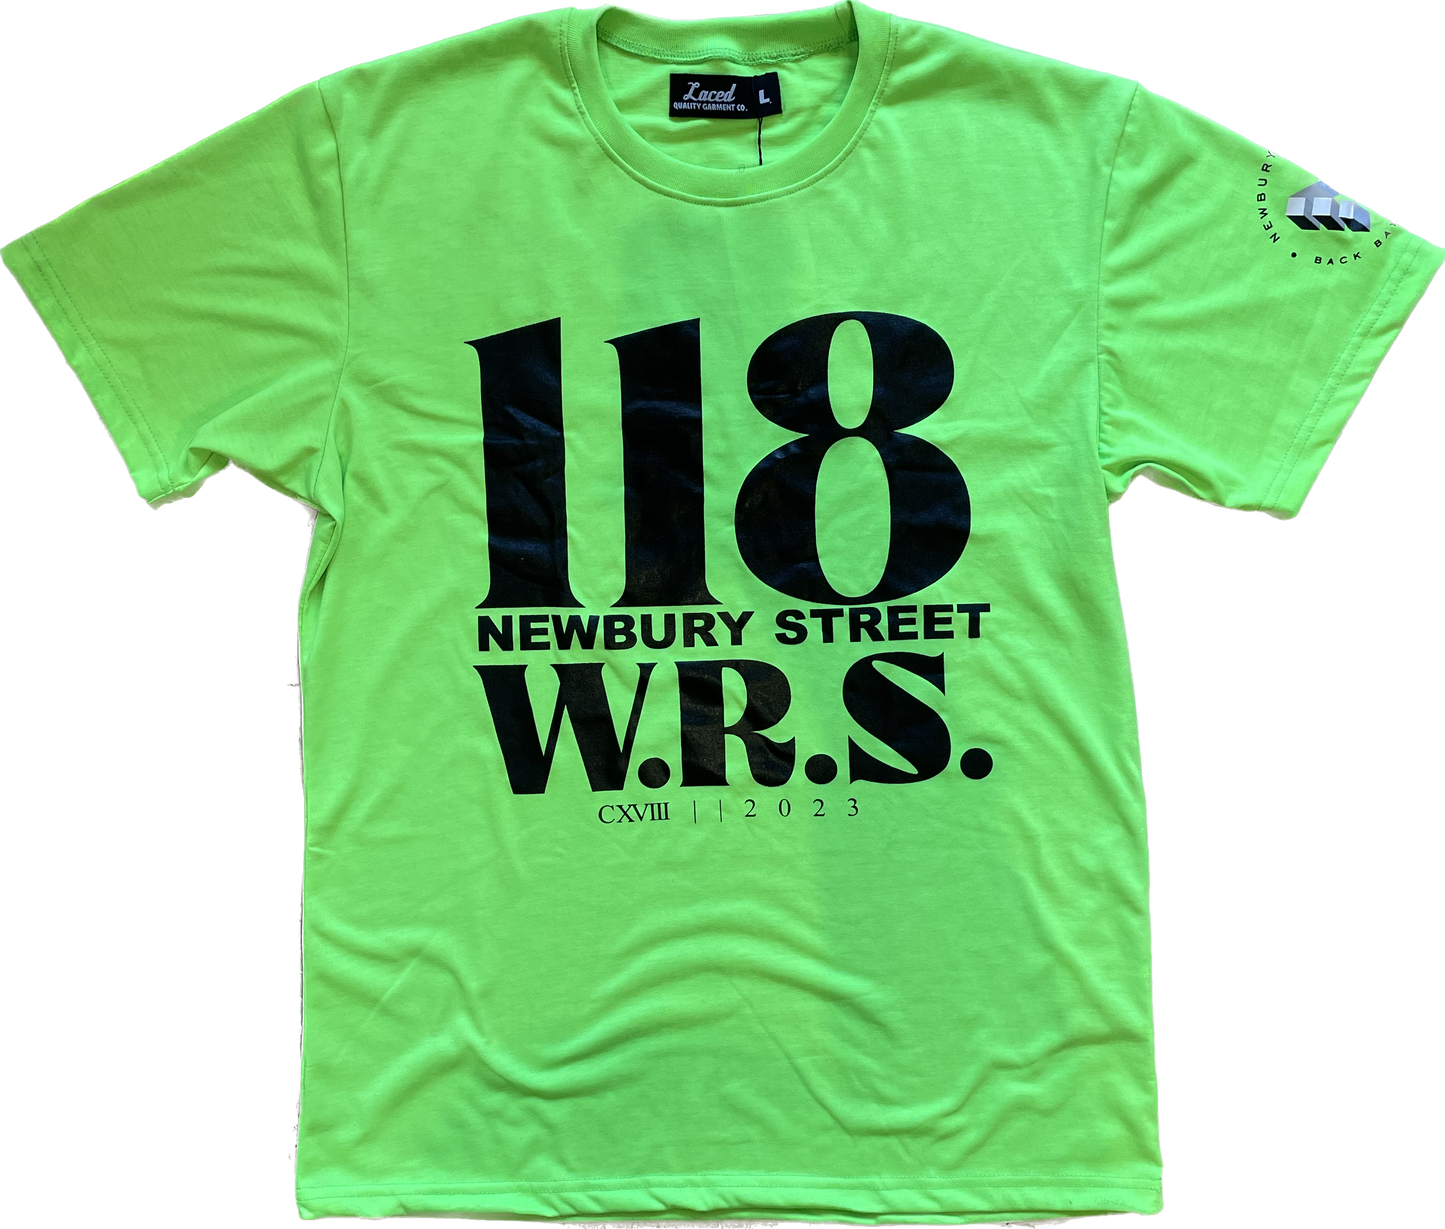 118 NewBury st. Tee green